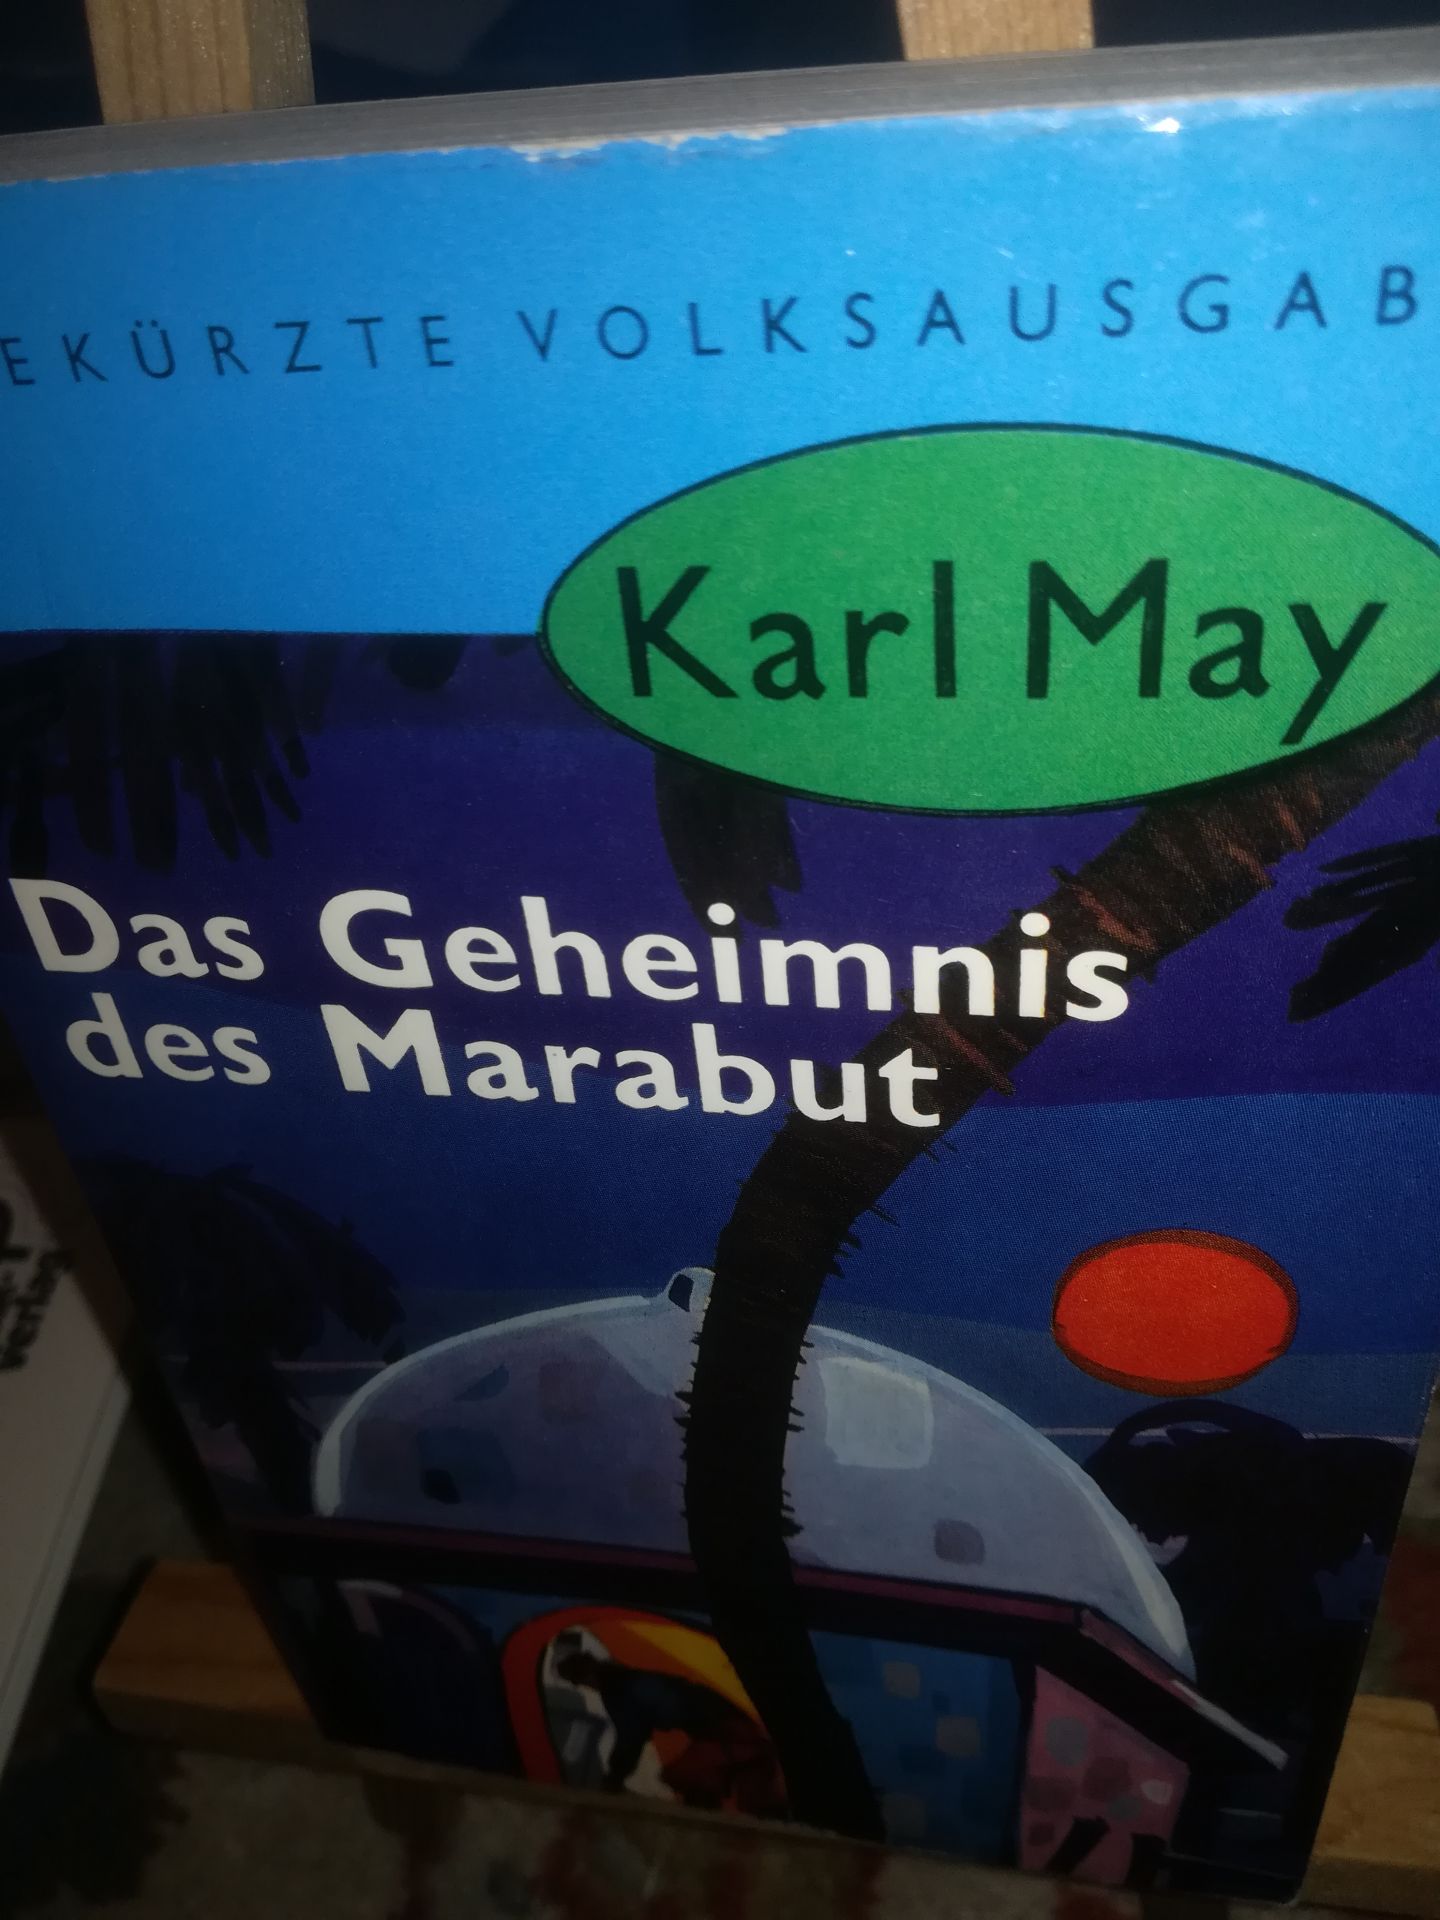 Das Geheimnis des Marabut, T 57 - May Karl